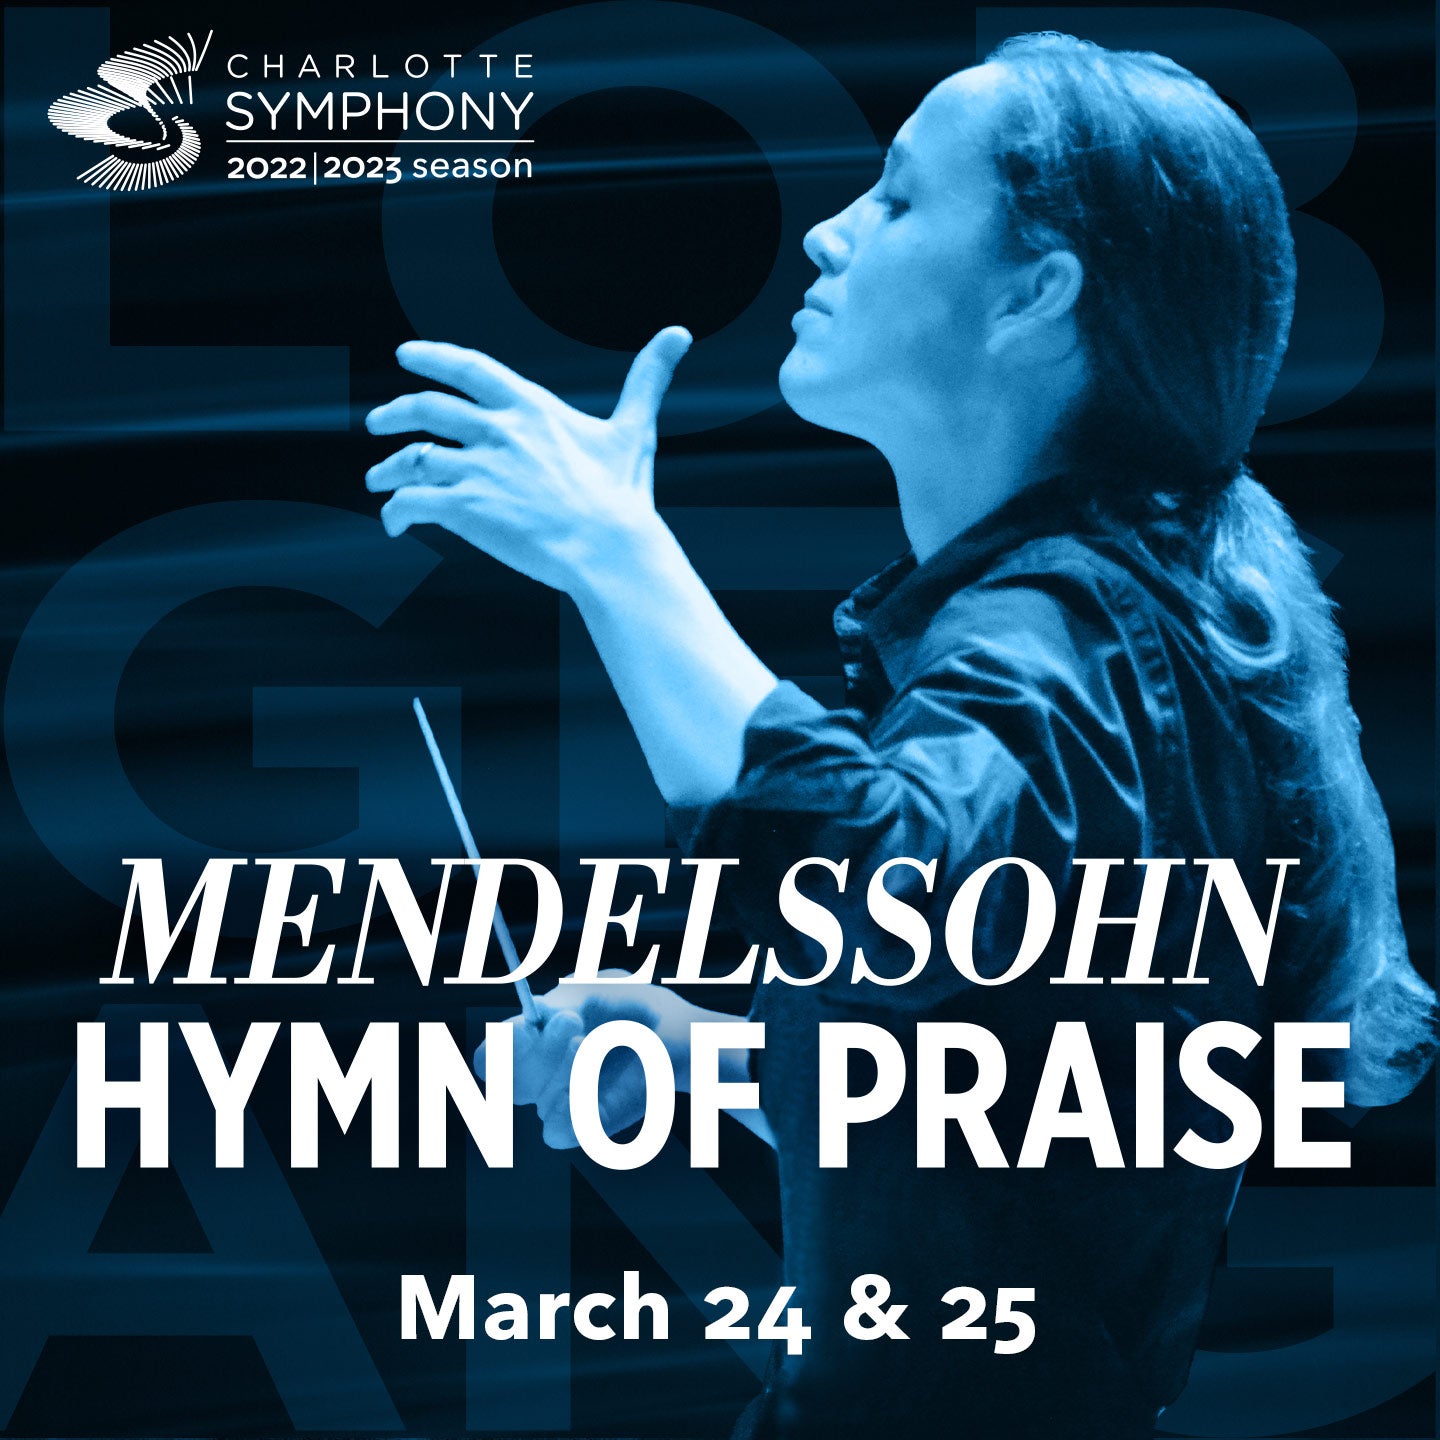 Charlotte Symphony: Mendelssohn Hymn of Praise